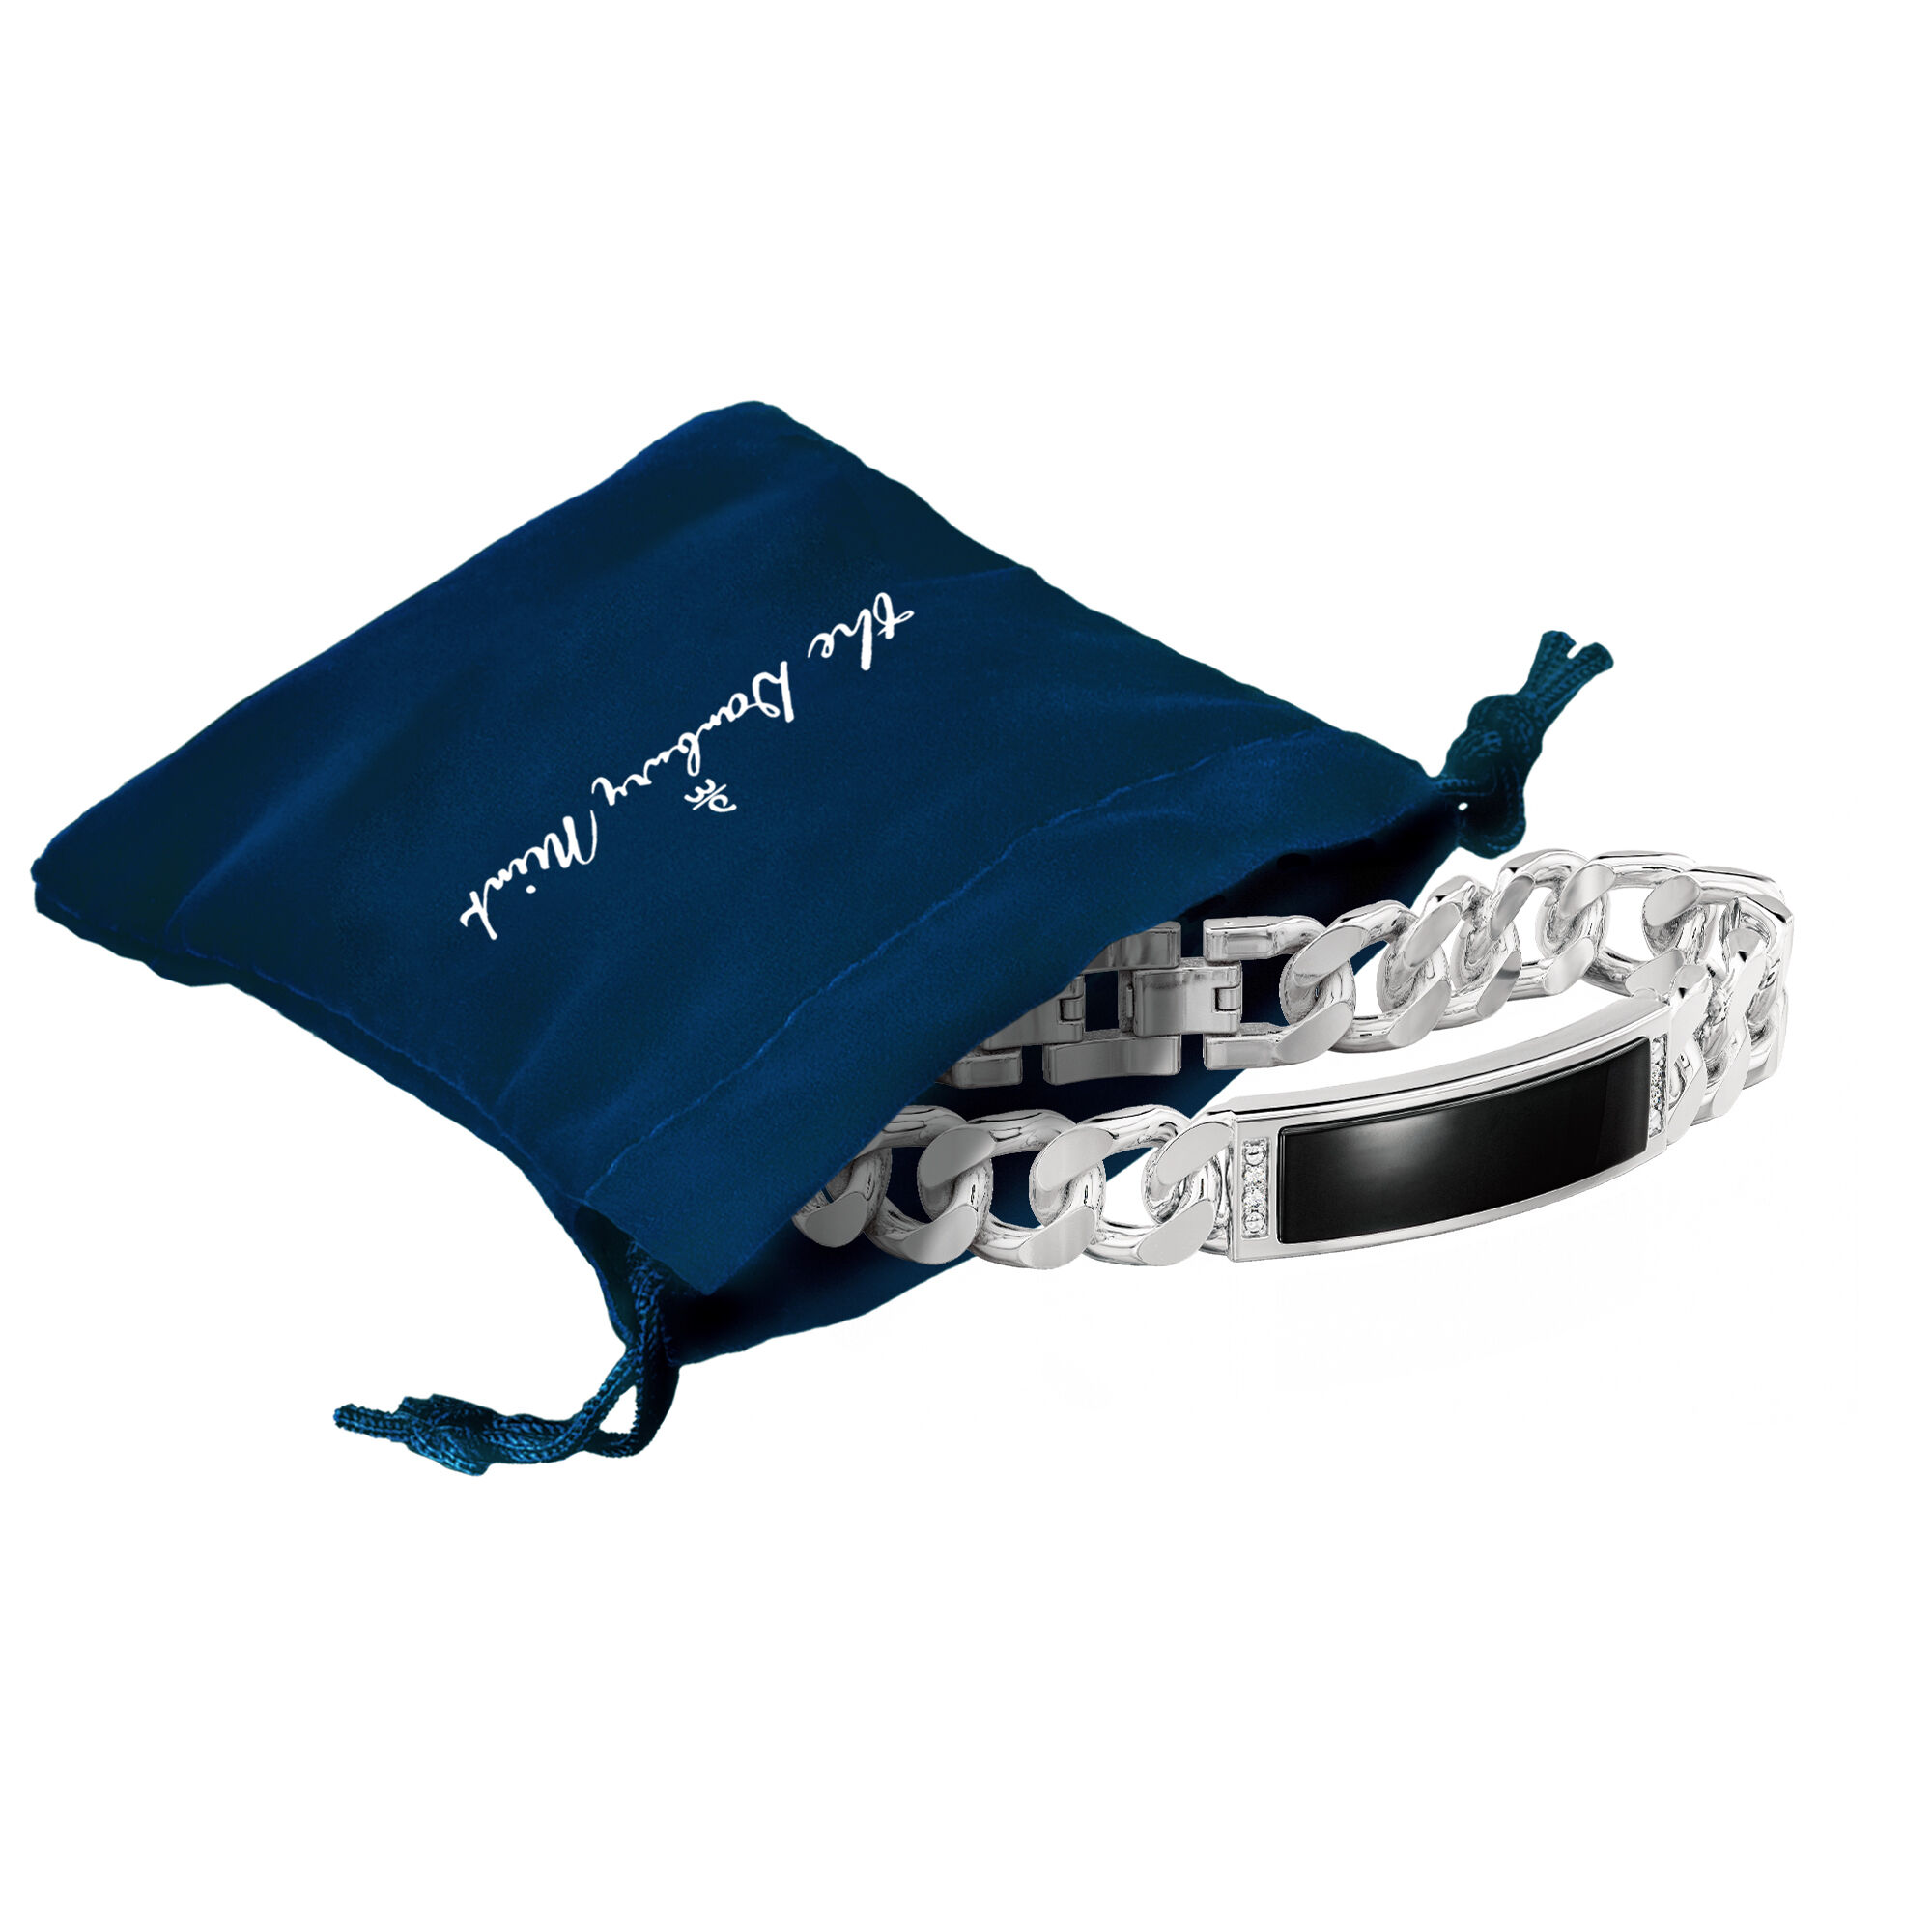 Links of Steel Ring Bracelet Set 10401 0012 g gift pouch